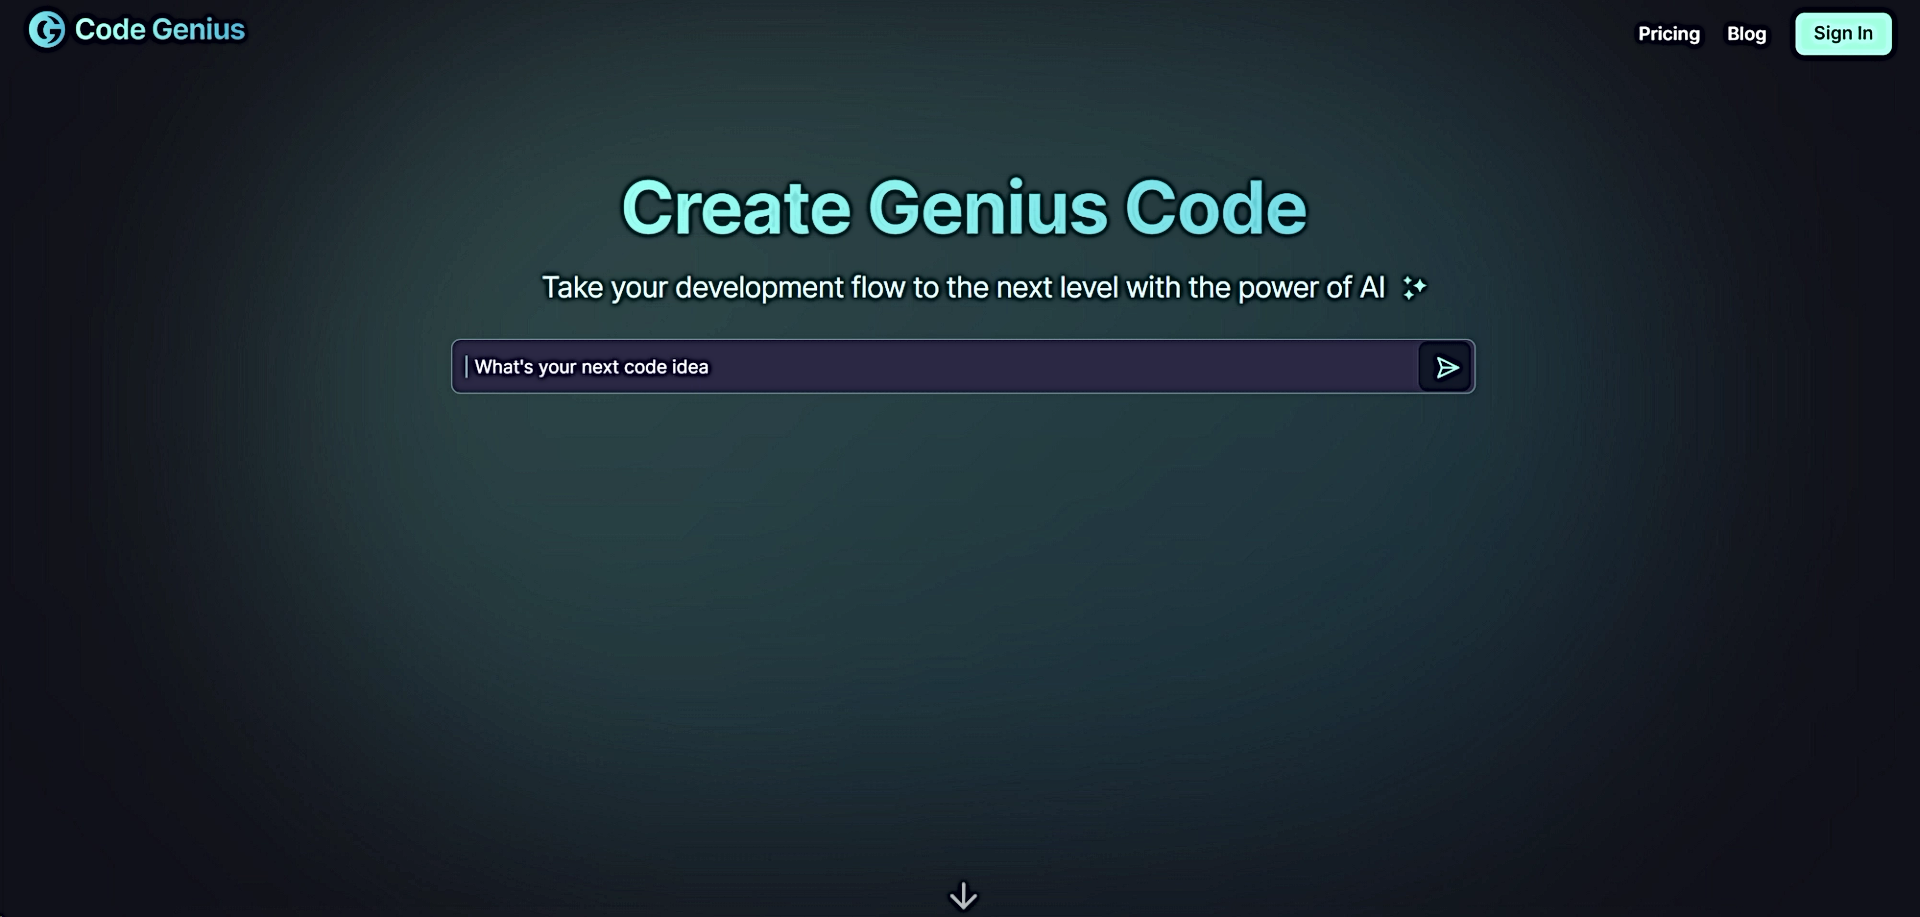 Code Genius featured